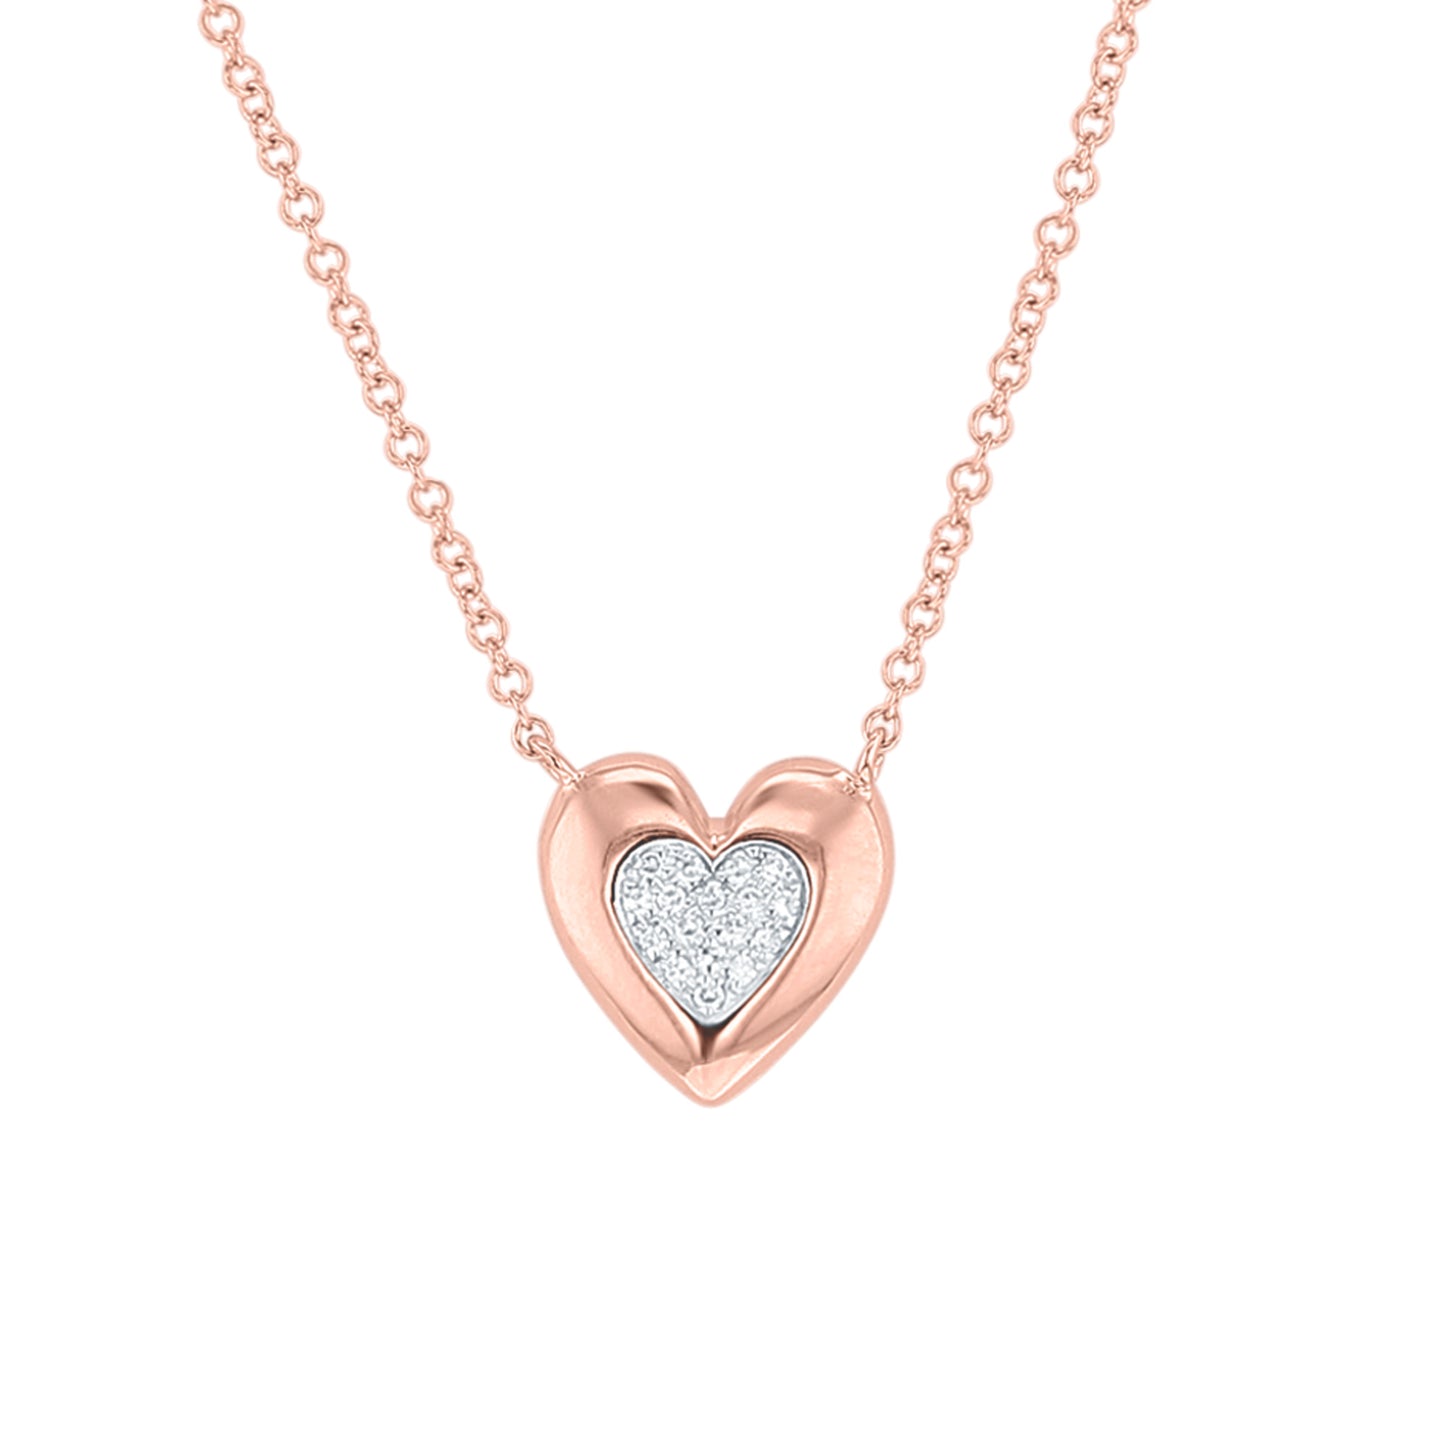 Simplistic Diamond Heart Necklace